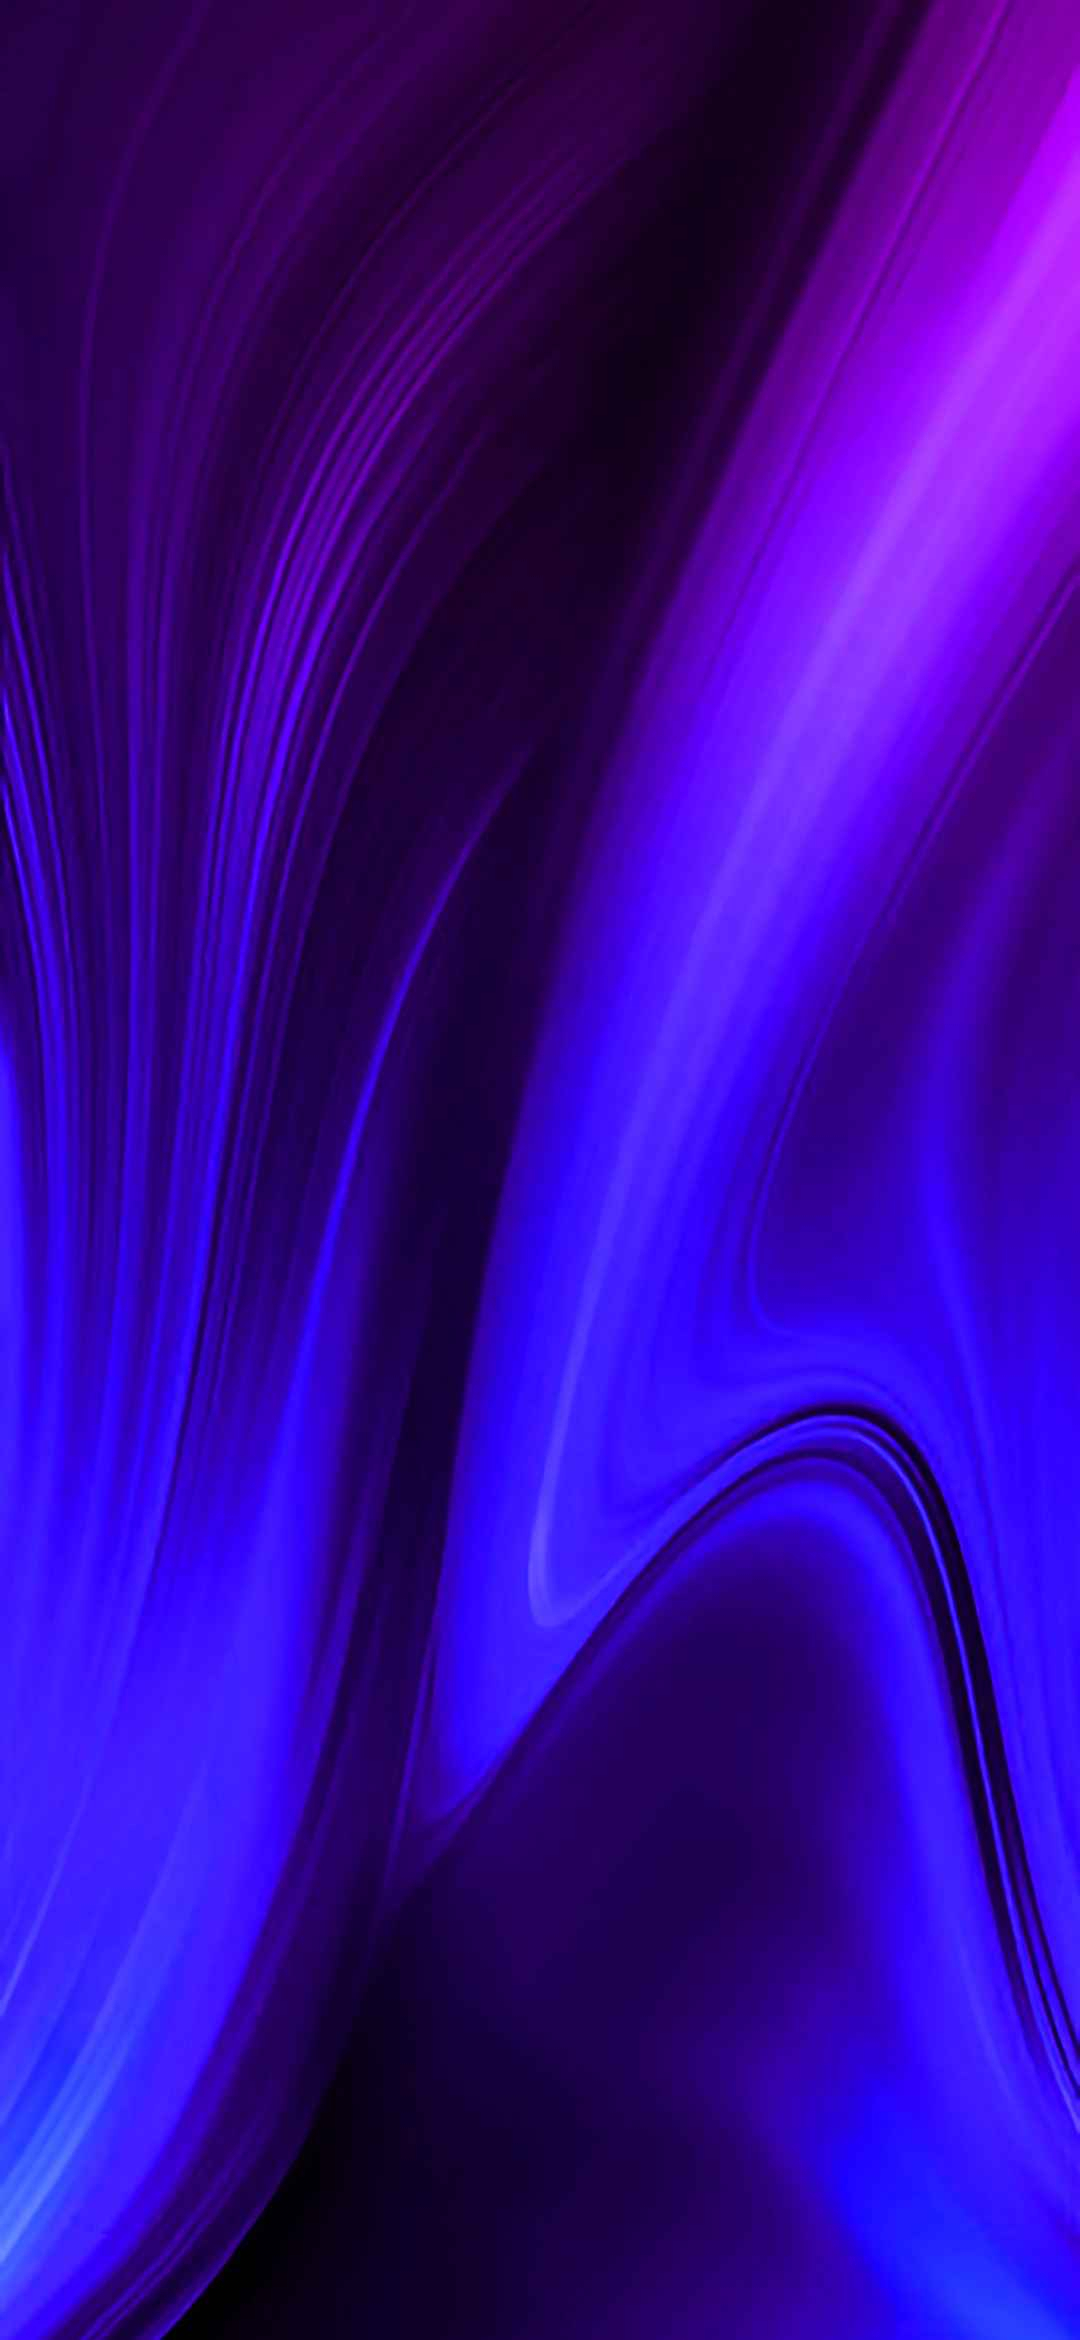 サムスンギャラクシーグランドプライムプラス壁紙,青い,バイオレット,紫の,エレクトリックブルー,光